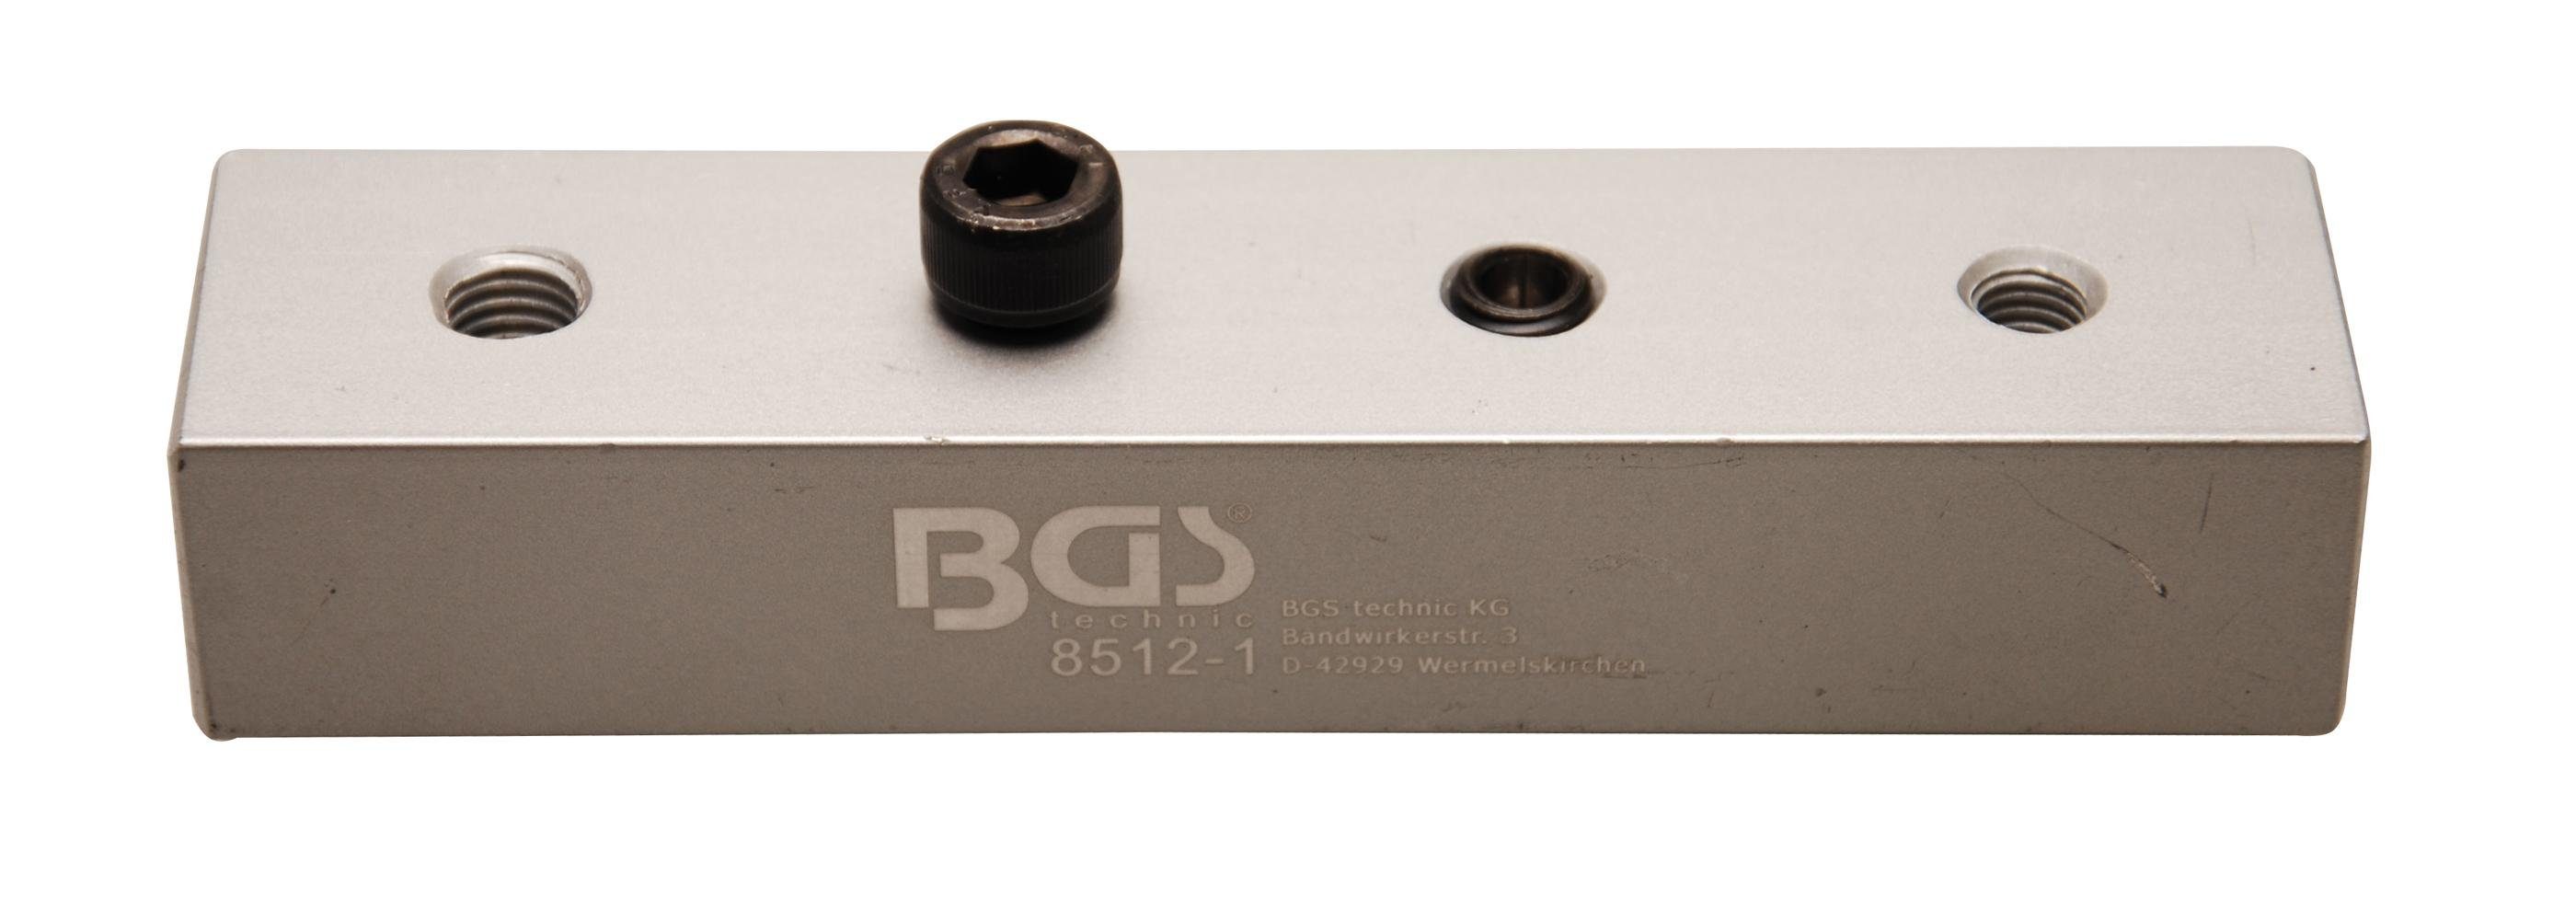 BGS technic Bit-Schraubendreher Demo-Block für Winkelschlüssel-Satz, für Art. 8512